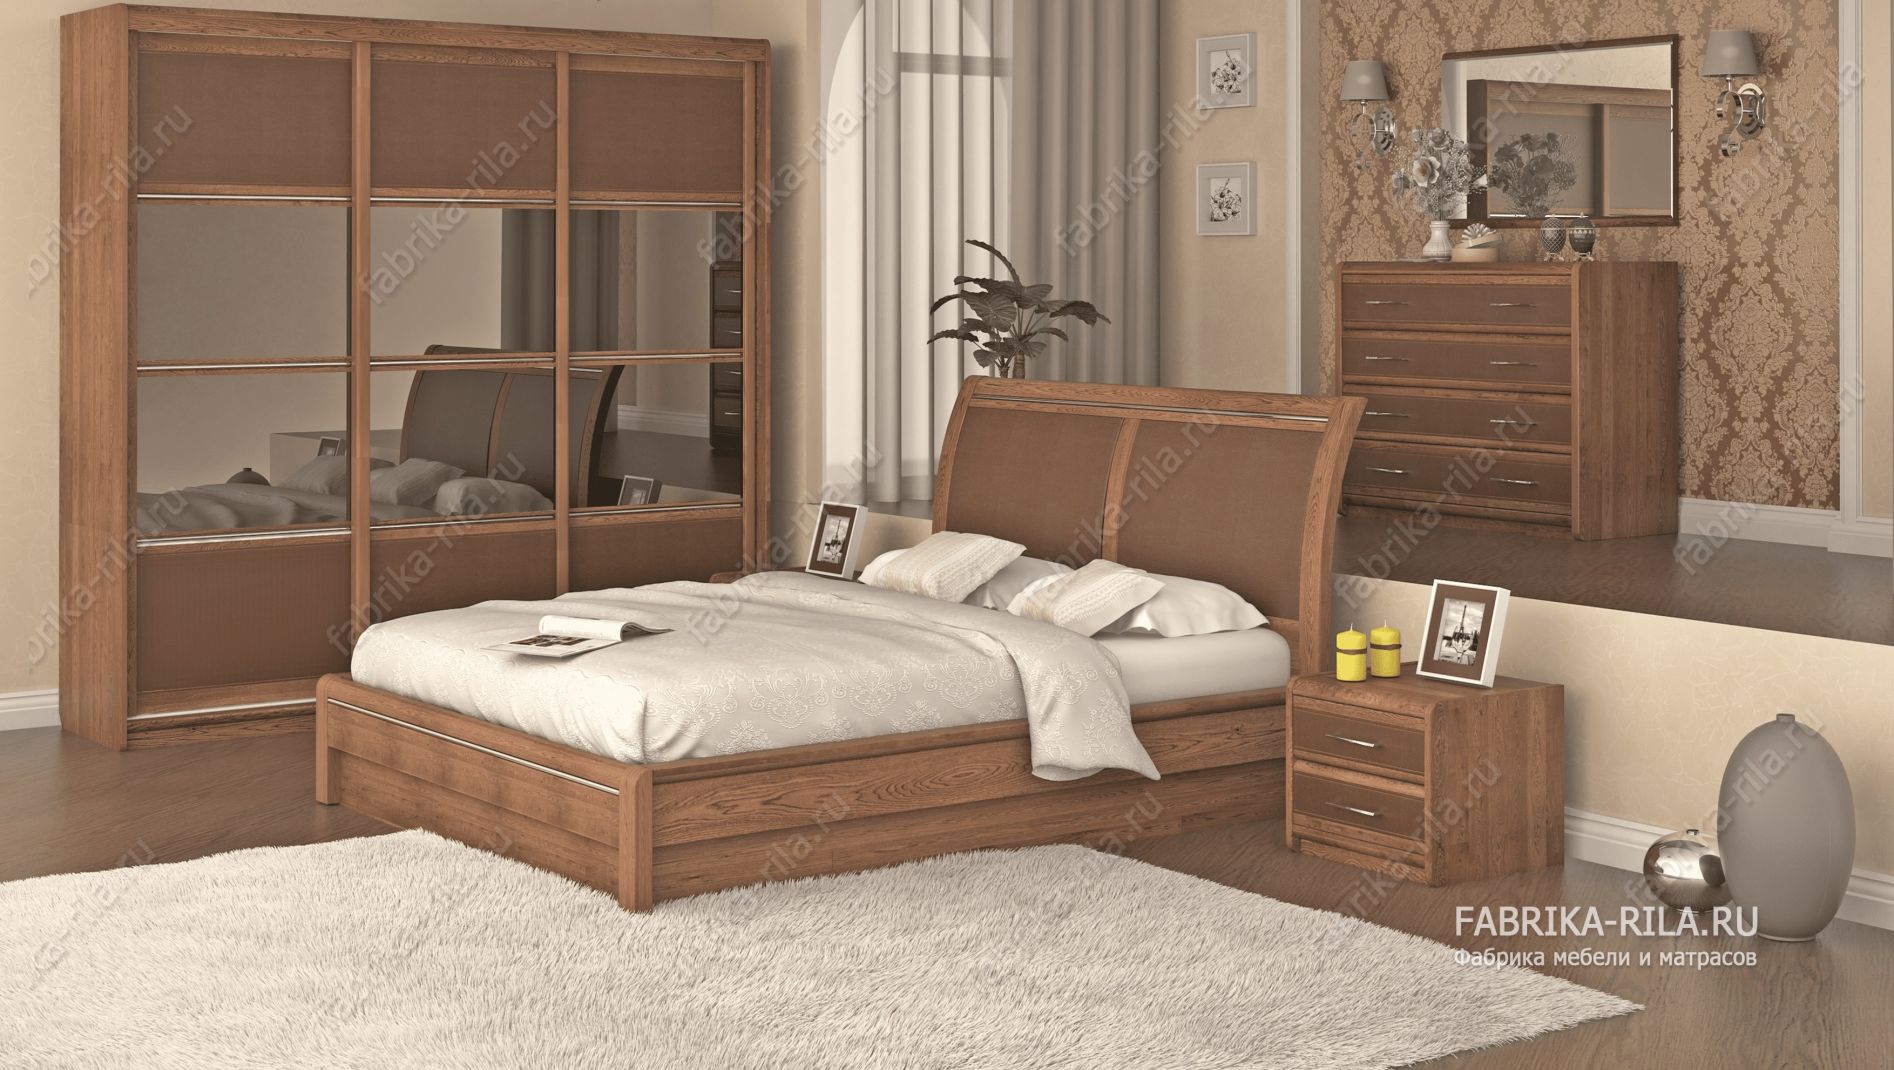 кровать Okaeri 6 см— 140x190 см. из сосны